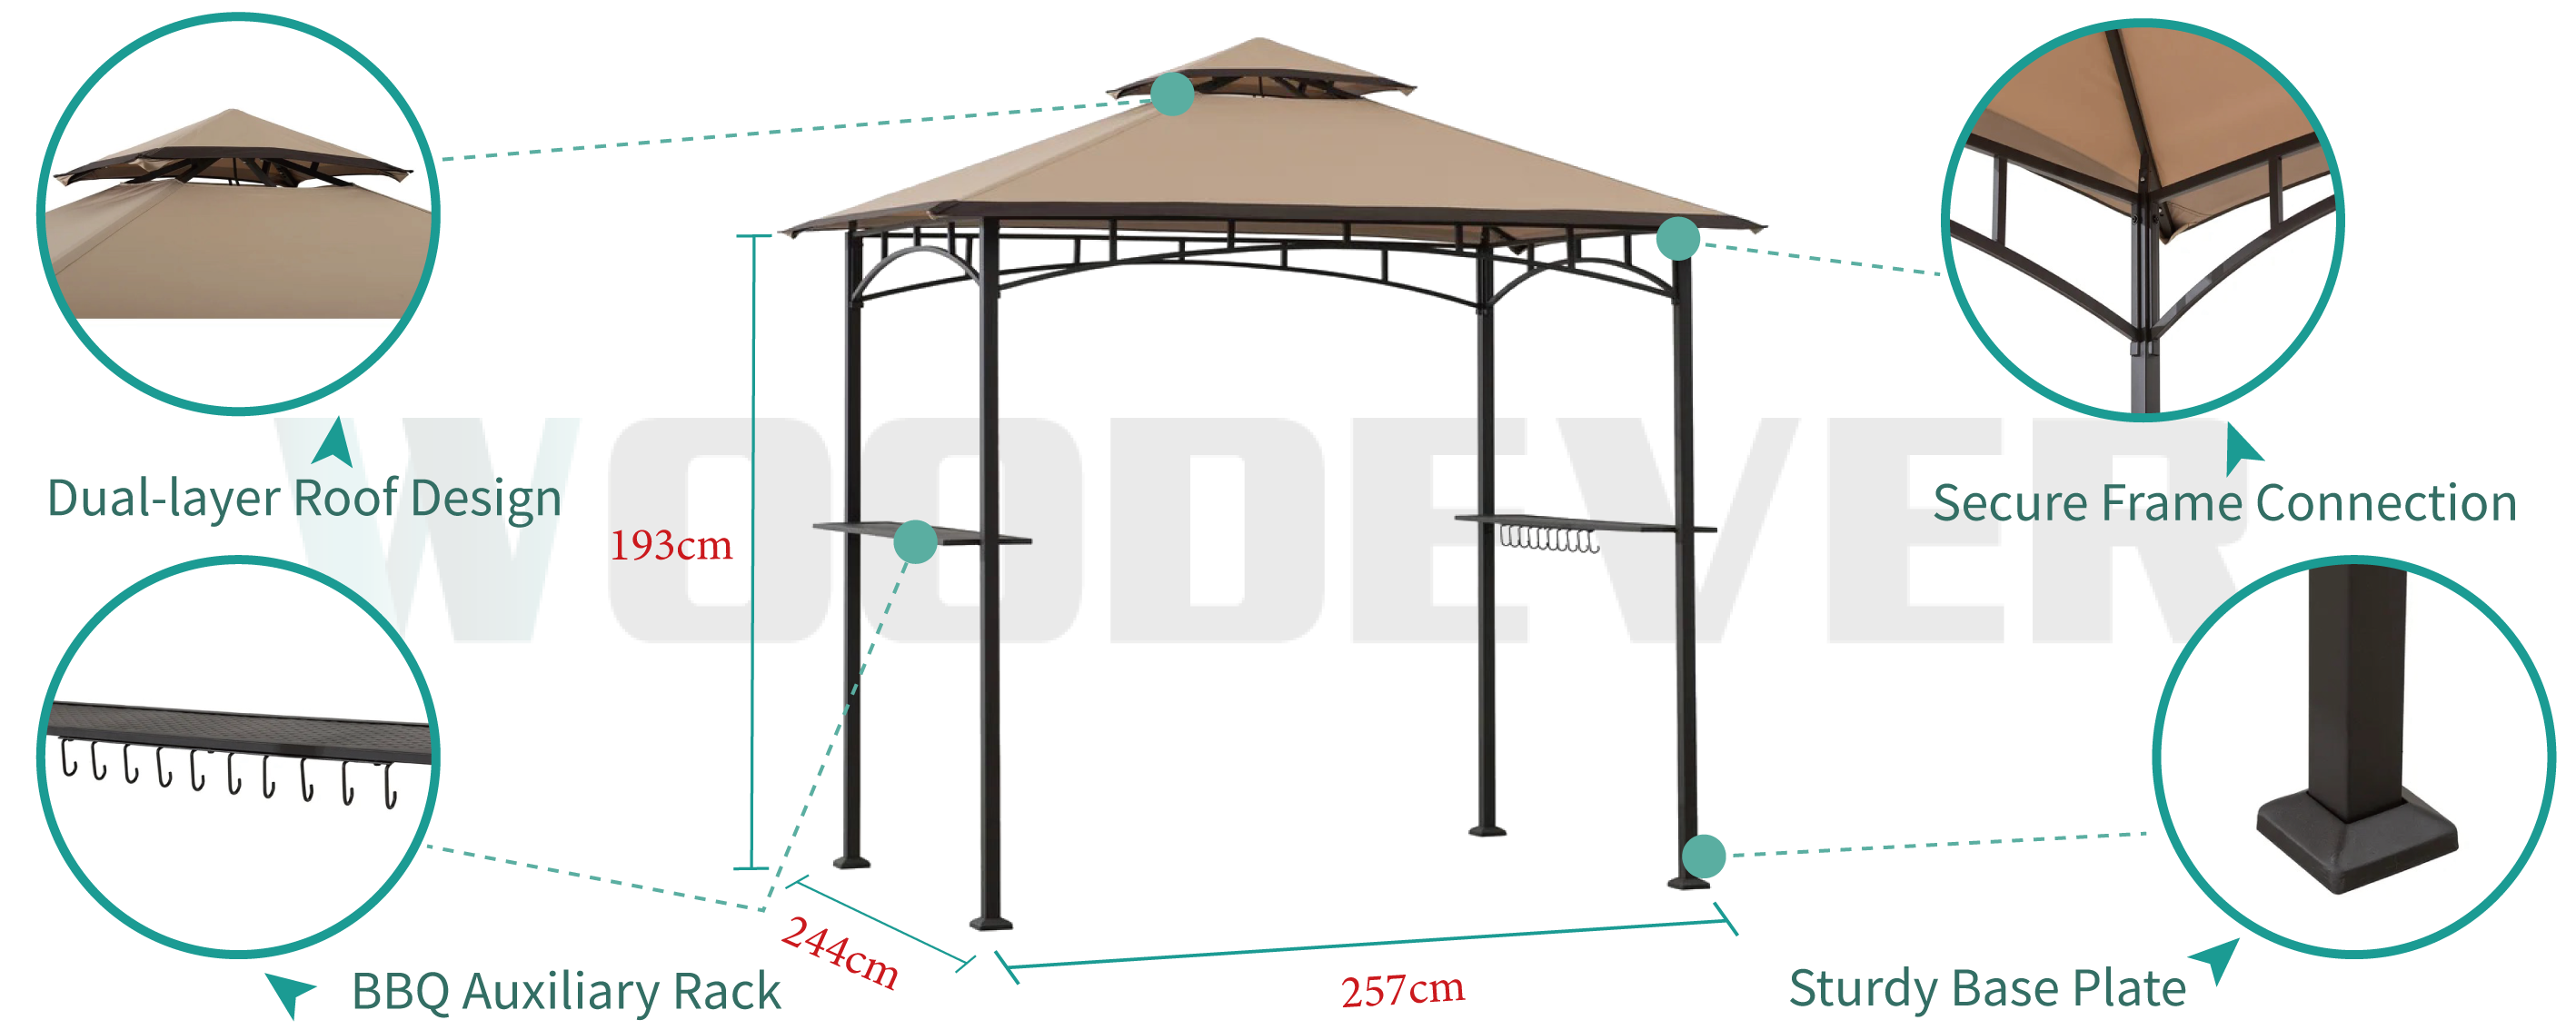 Pérgola de metal para churrasco ao ar livre da WOODEVER com design de telhado duplo, ventilação de circulação de 360 graus, com prateleiras e ganchos de metal para aumentar a experiência de uso ao ar livre.